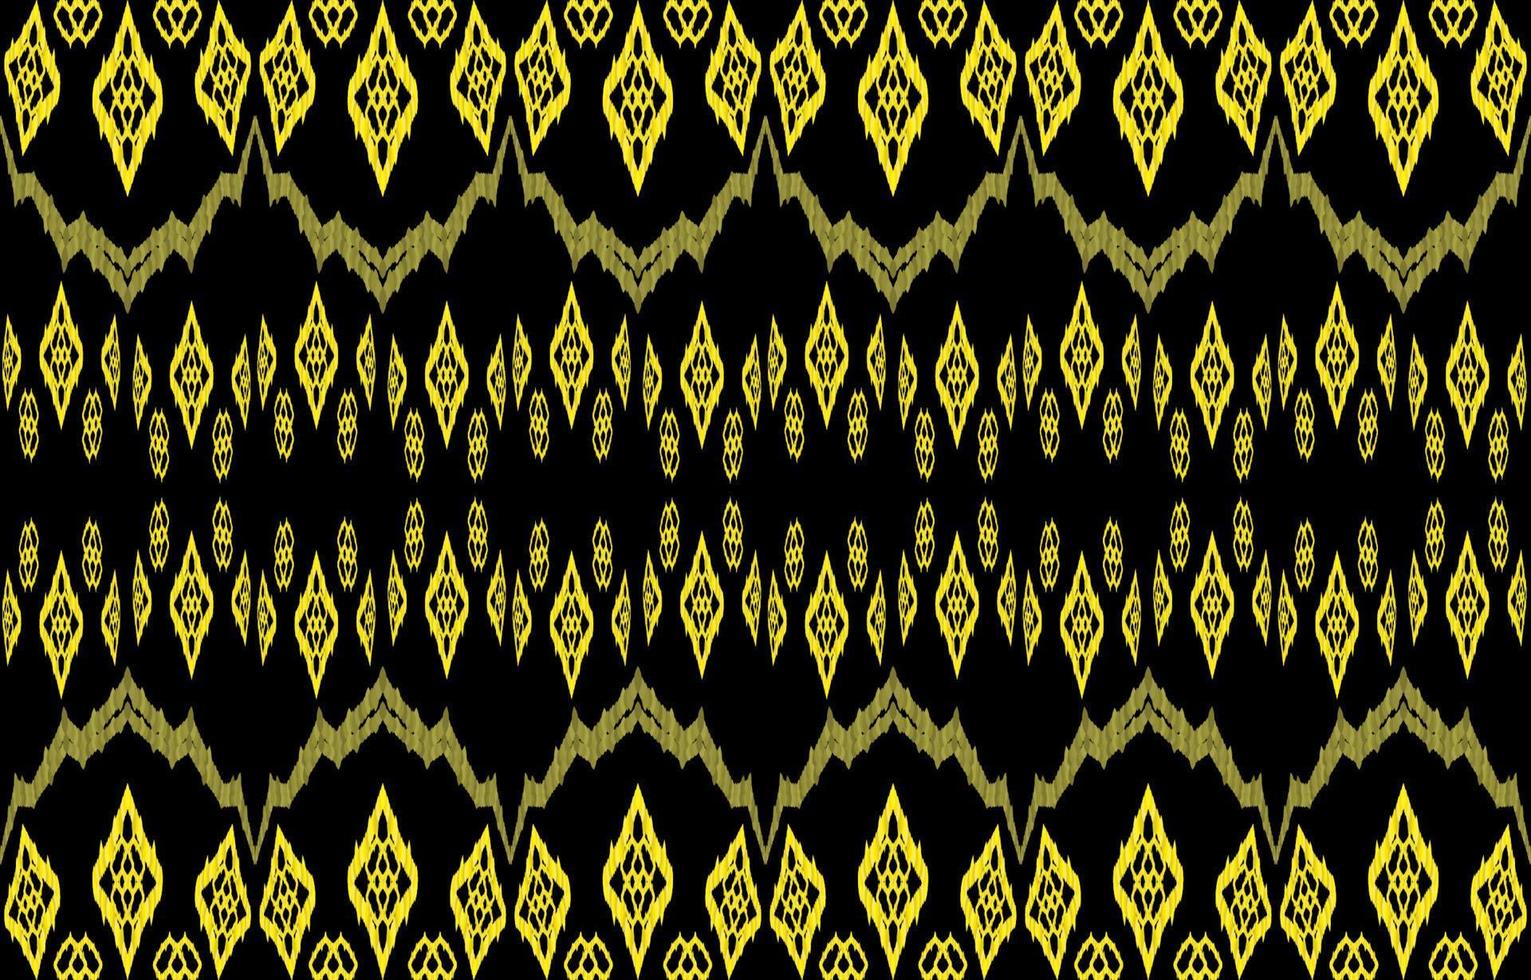 patrón textil africano. étnica geométrica ikat tribal nativa tela azteca patrones sin fisuras. estilo de bordado gráfico de línea real adornado. ilustración vectorial diseño retro vintage. concepto de color dorado. vector